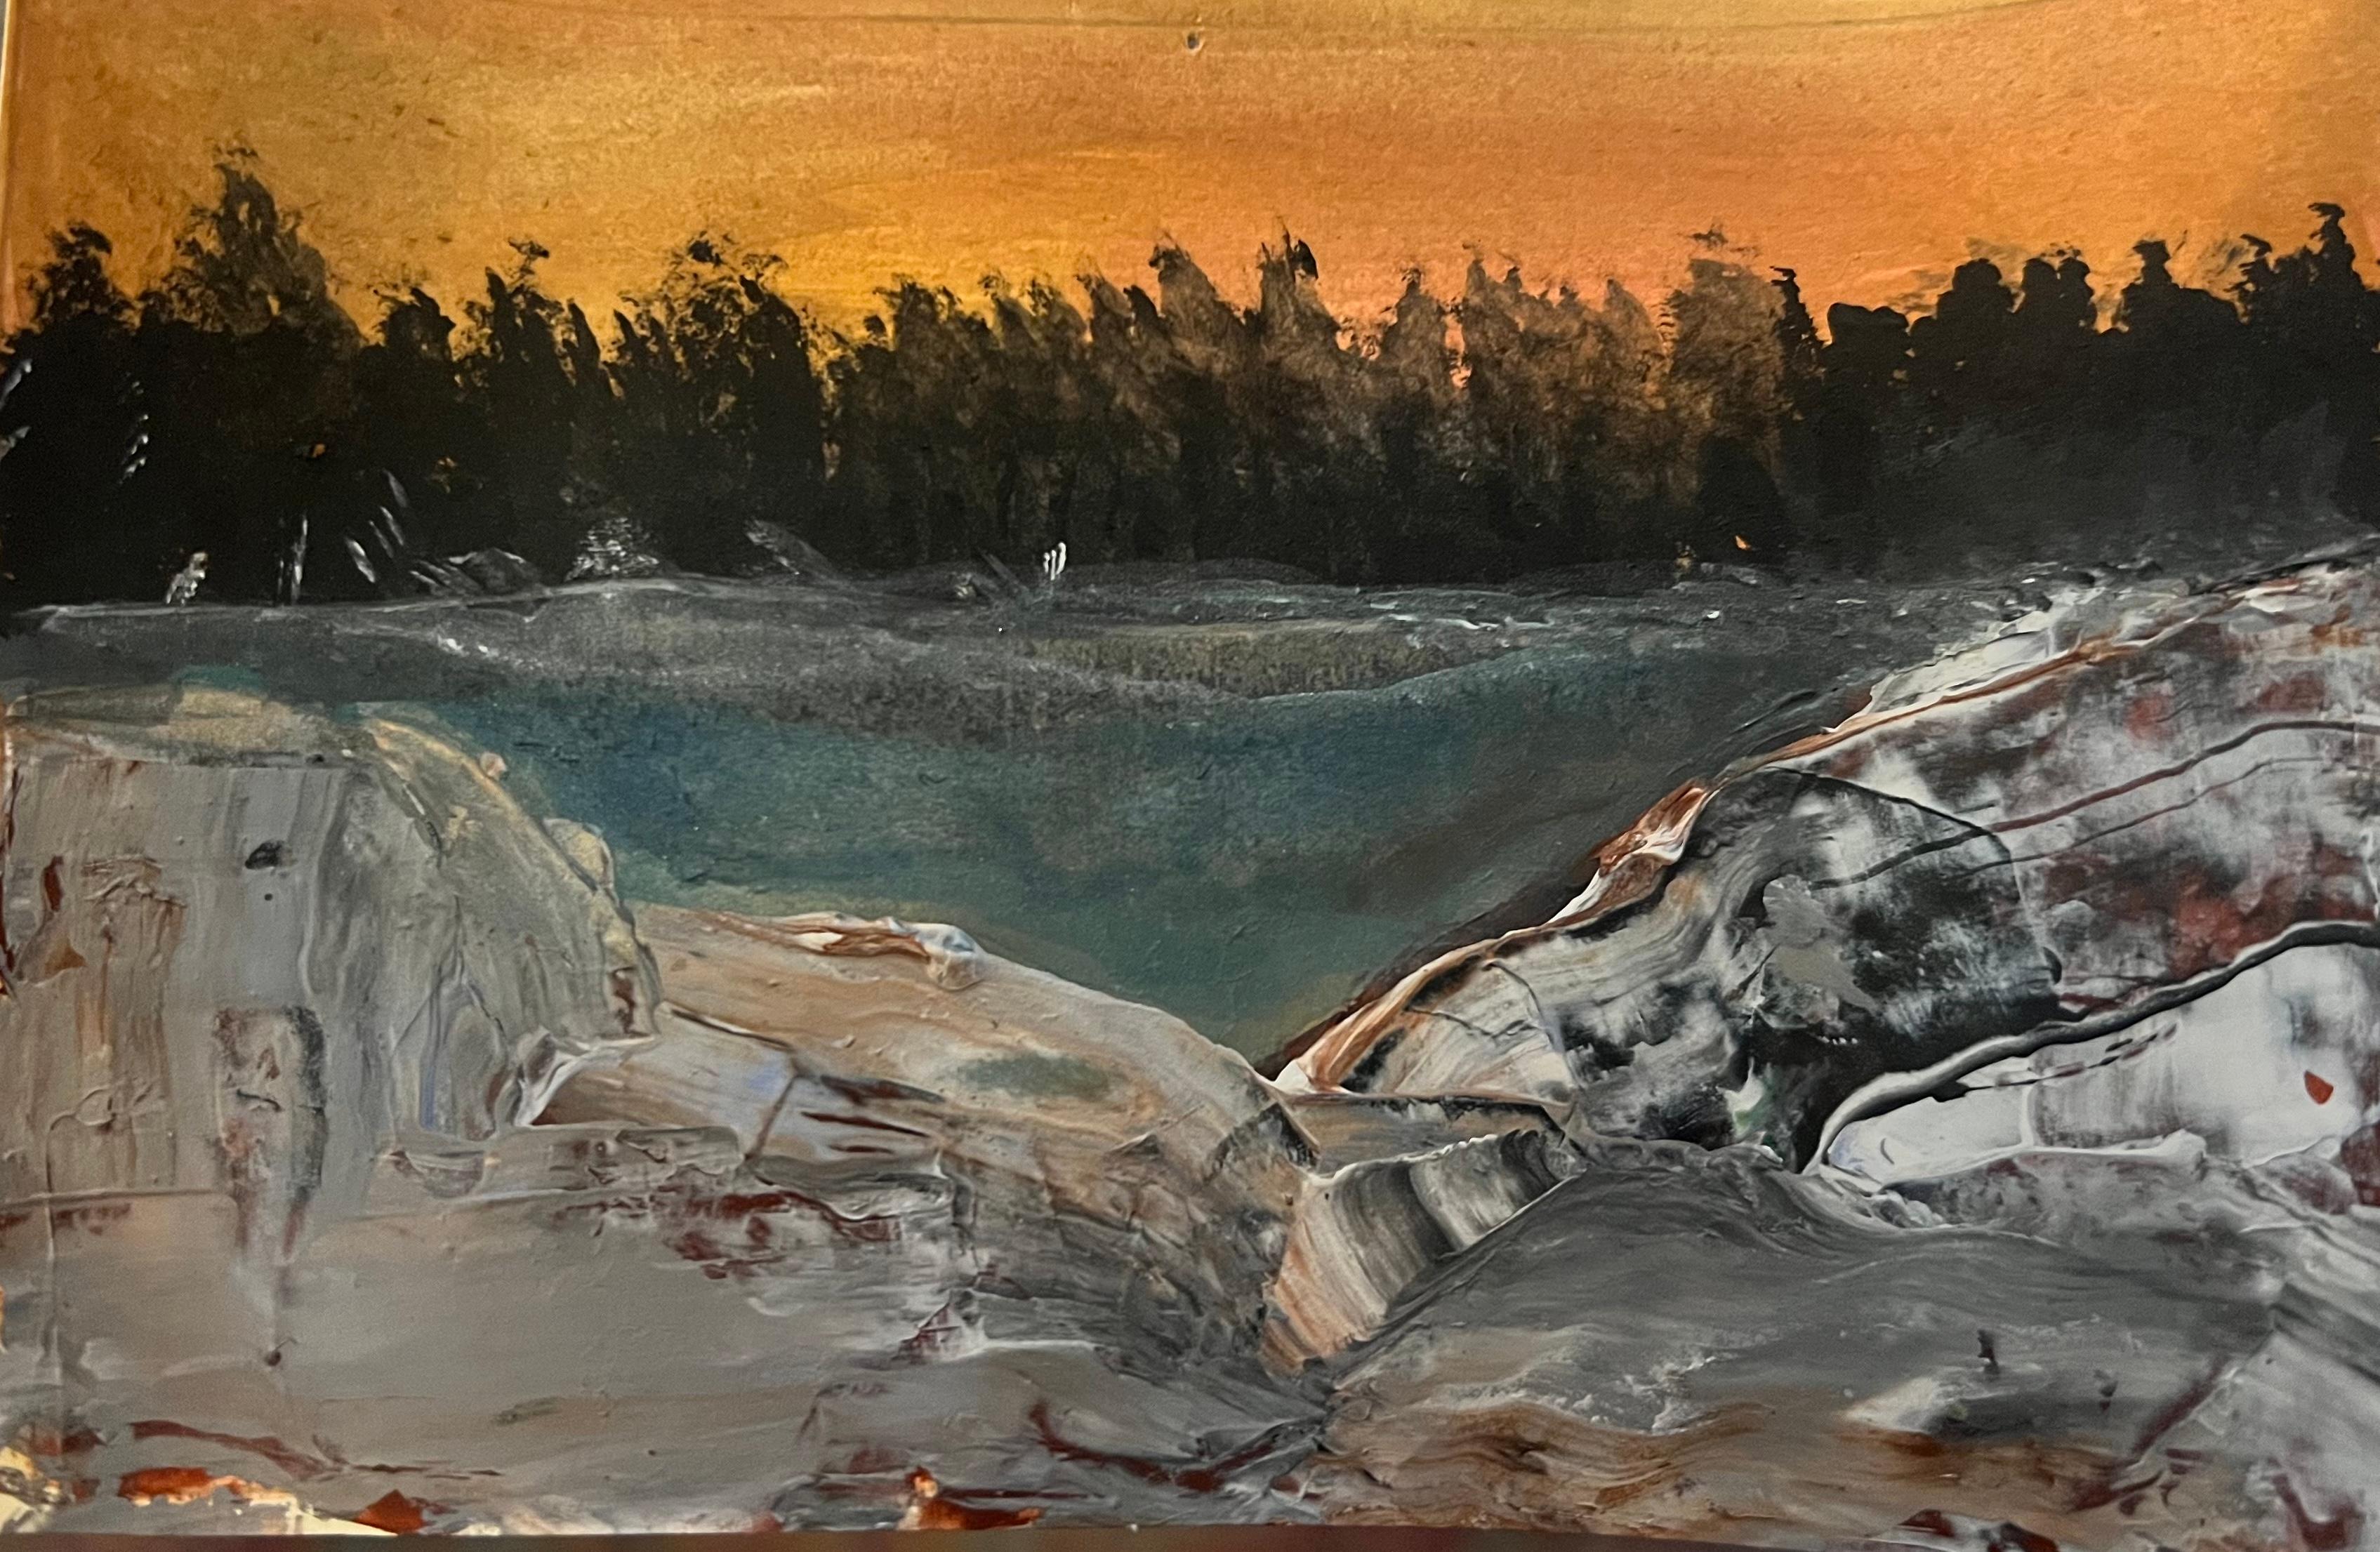 Peinture de paysage abstrait "Citrus Skies" 24" x 30" inch par Angela Afifi

Non encadré. Livré roulé en tube